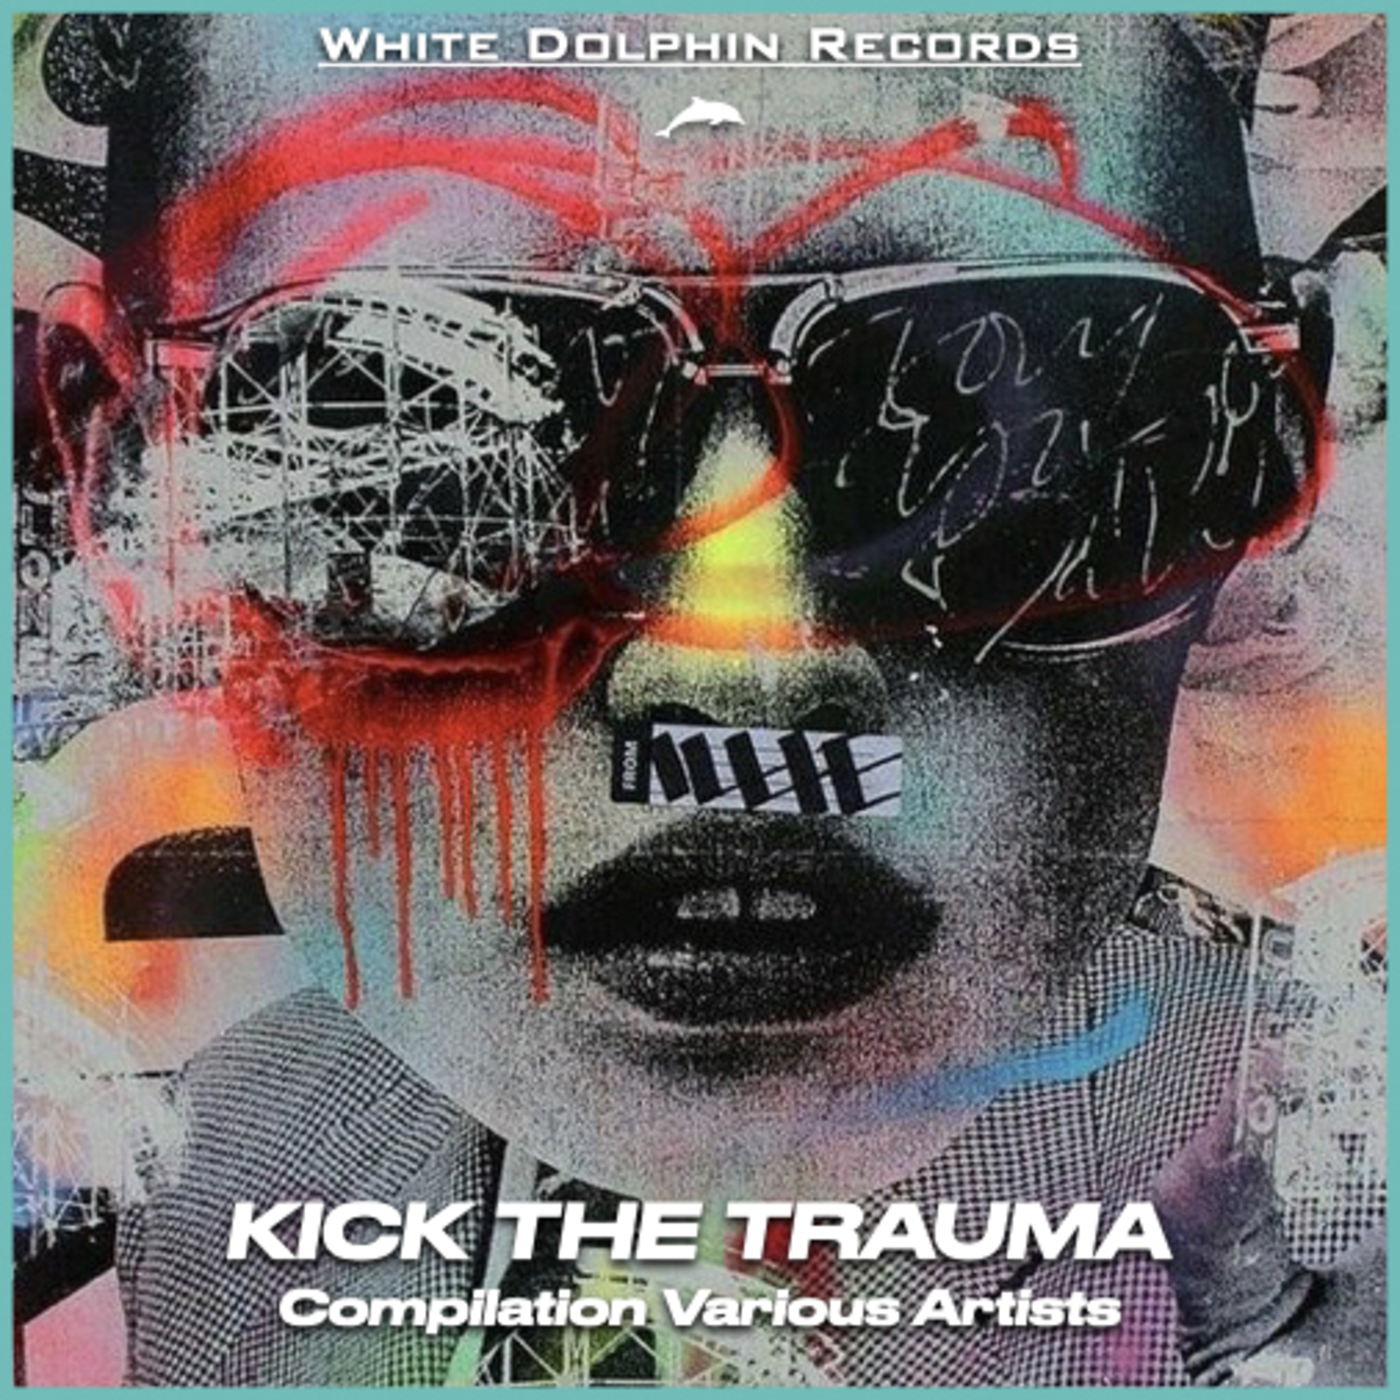 La nuova Compilation Summer Urban della White Dolphin Records : 